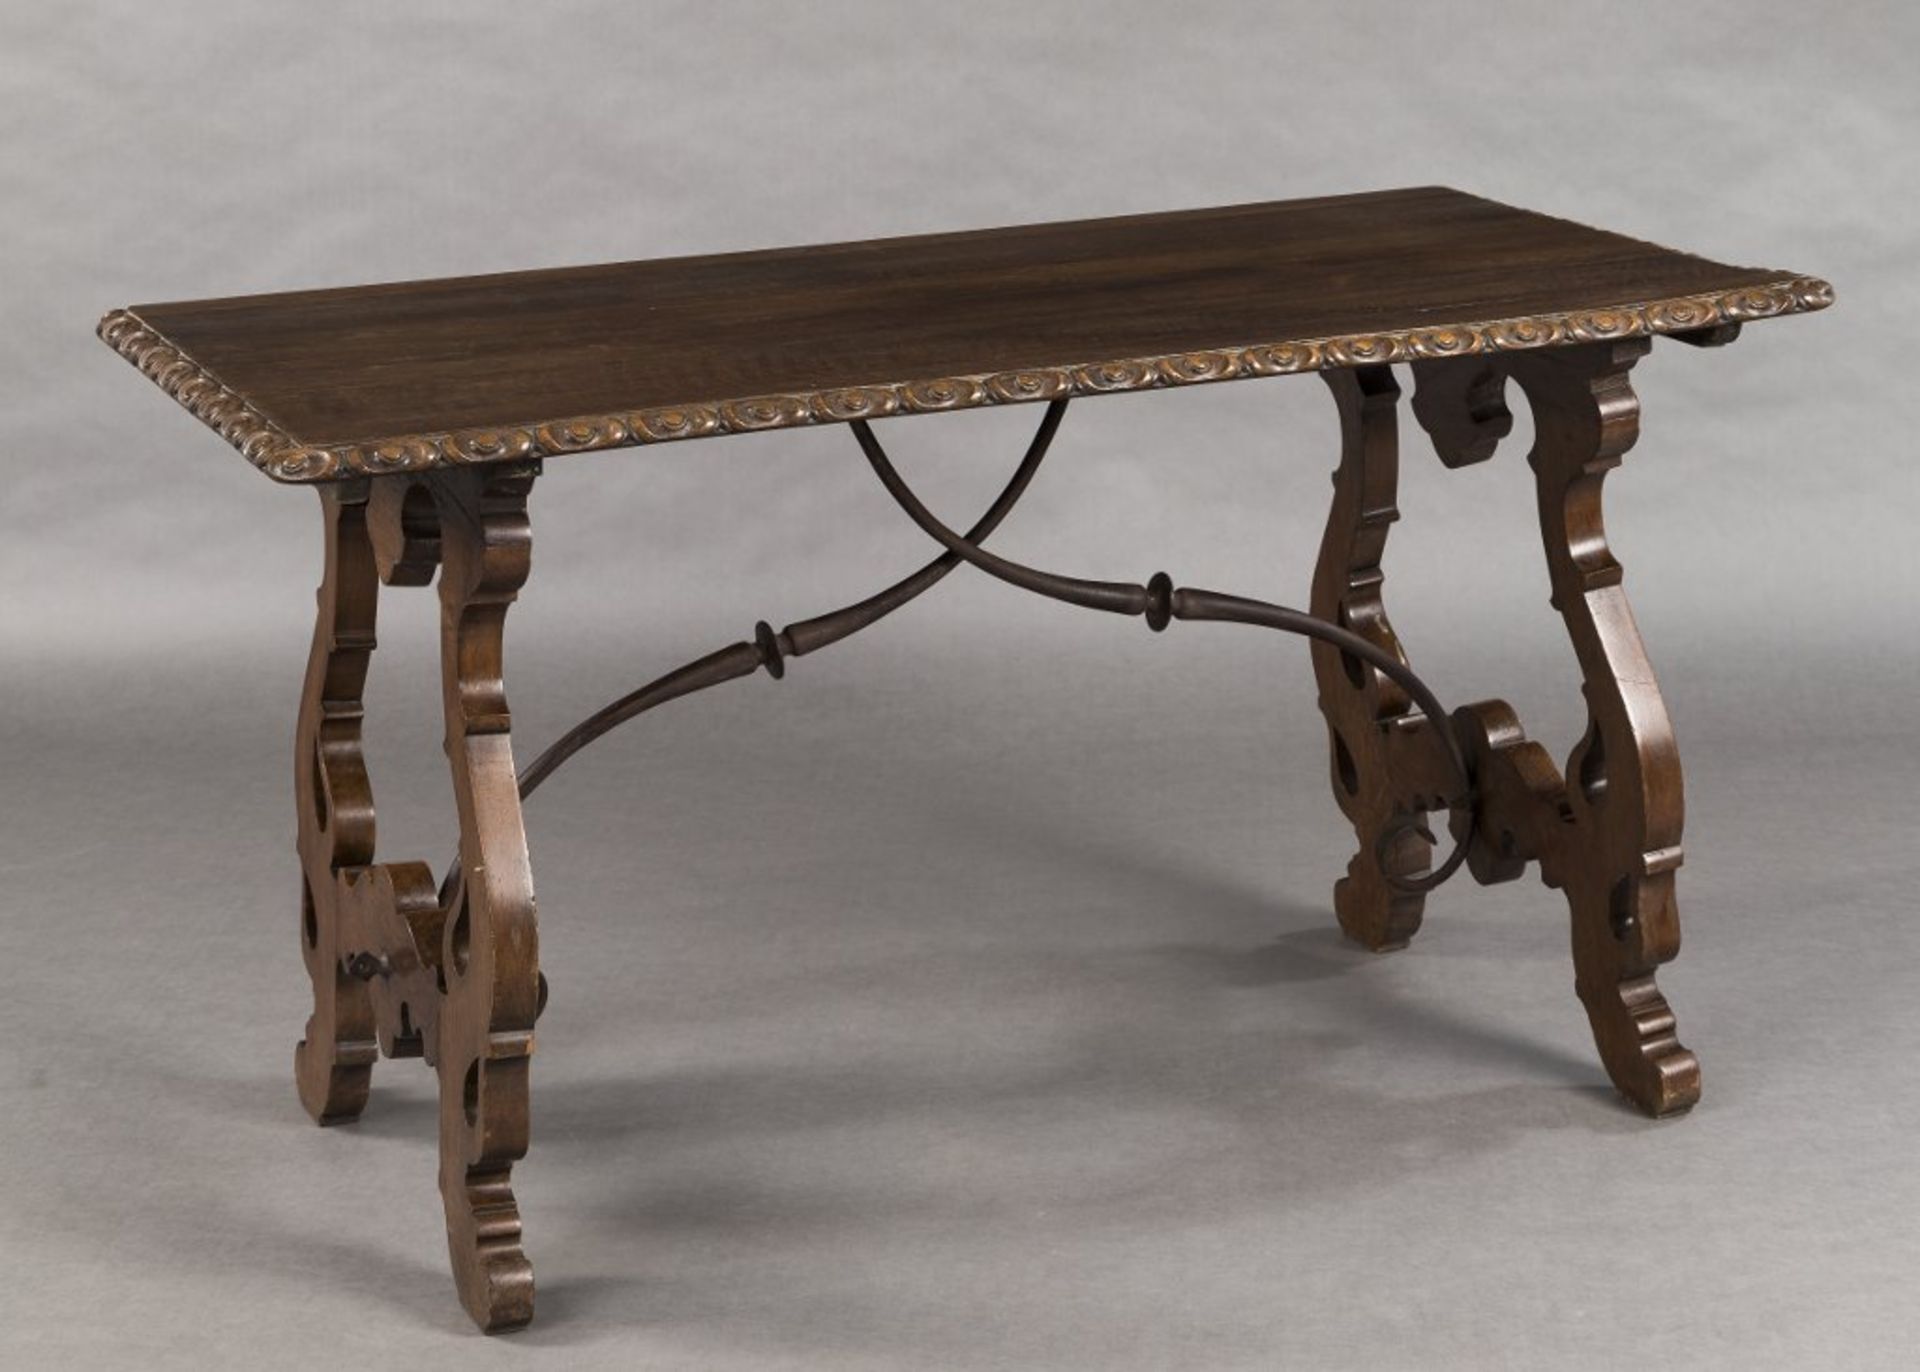 Tisch im spanischen Barockstil. Wangenfüße mit Metallverstrebung. Eiche. 19. Jh. 77 x 139 x 74 cm.